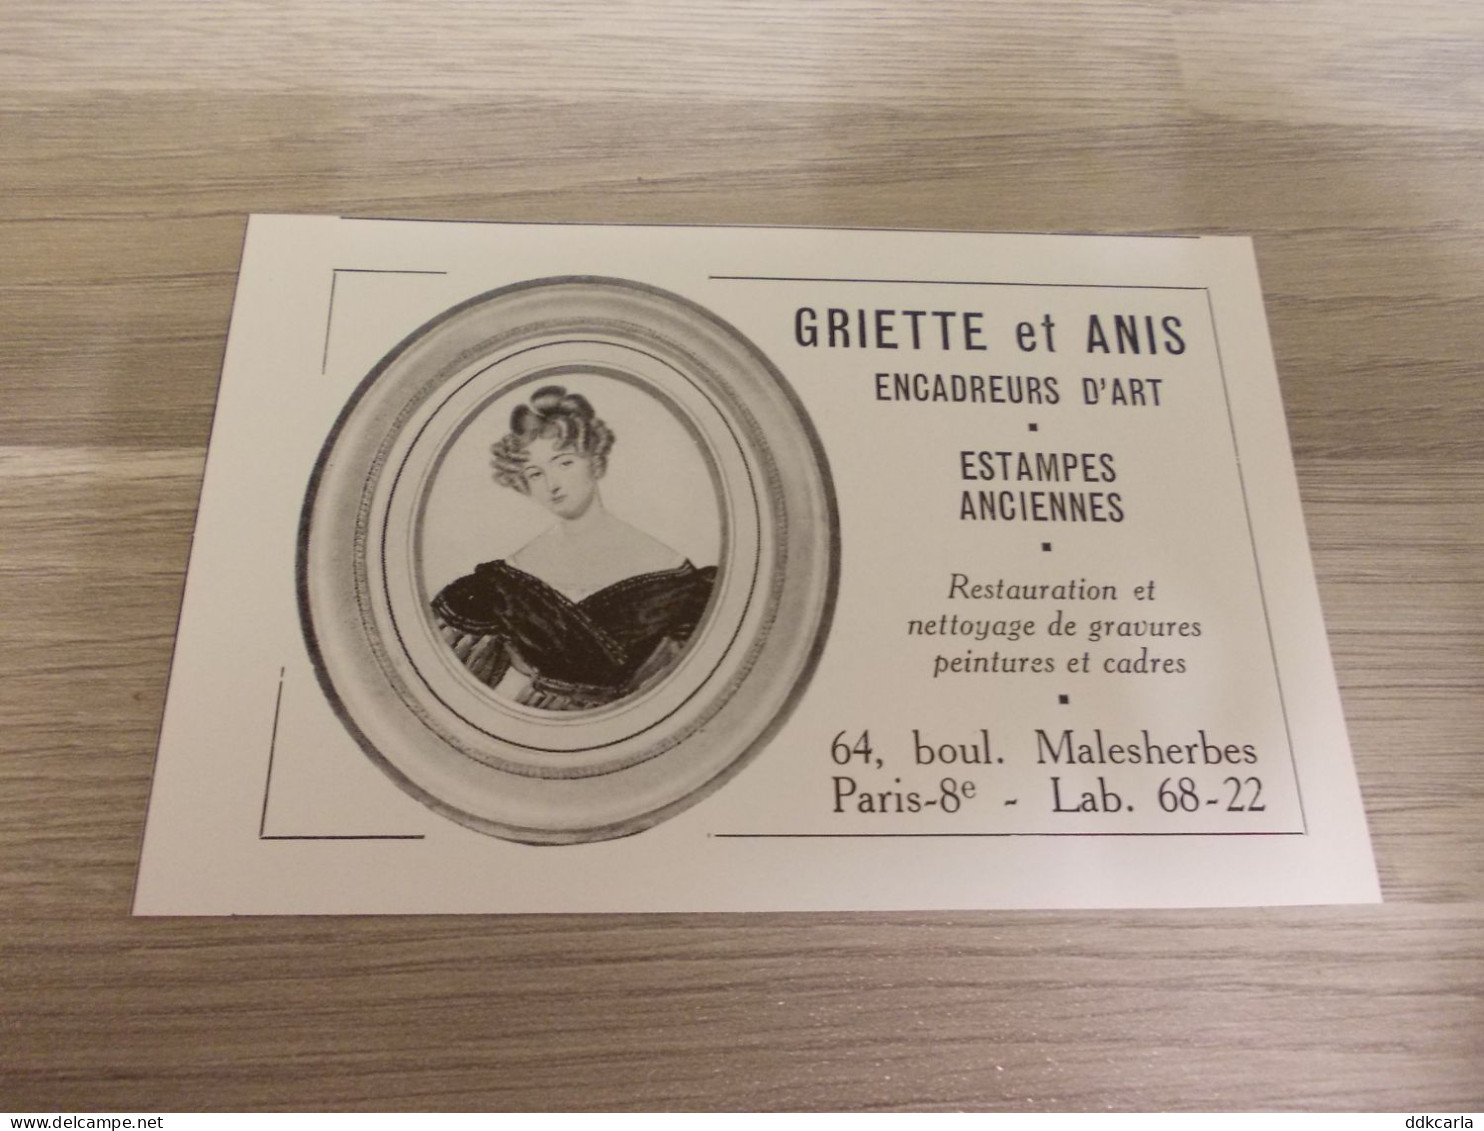 Reclame Advertentie Uit Oud Tijdschrift 1956 - Griette Et Anis Encadreurs D'Art - Malesherbes Paris - Publicités